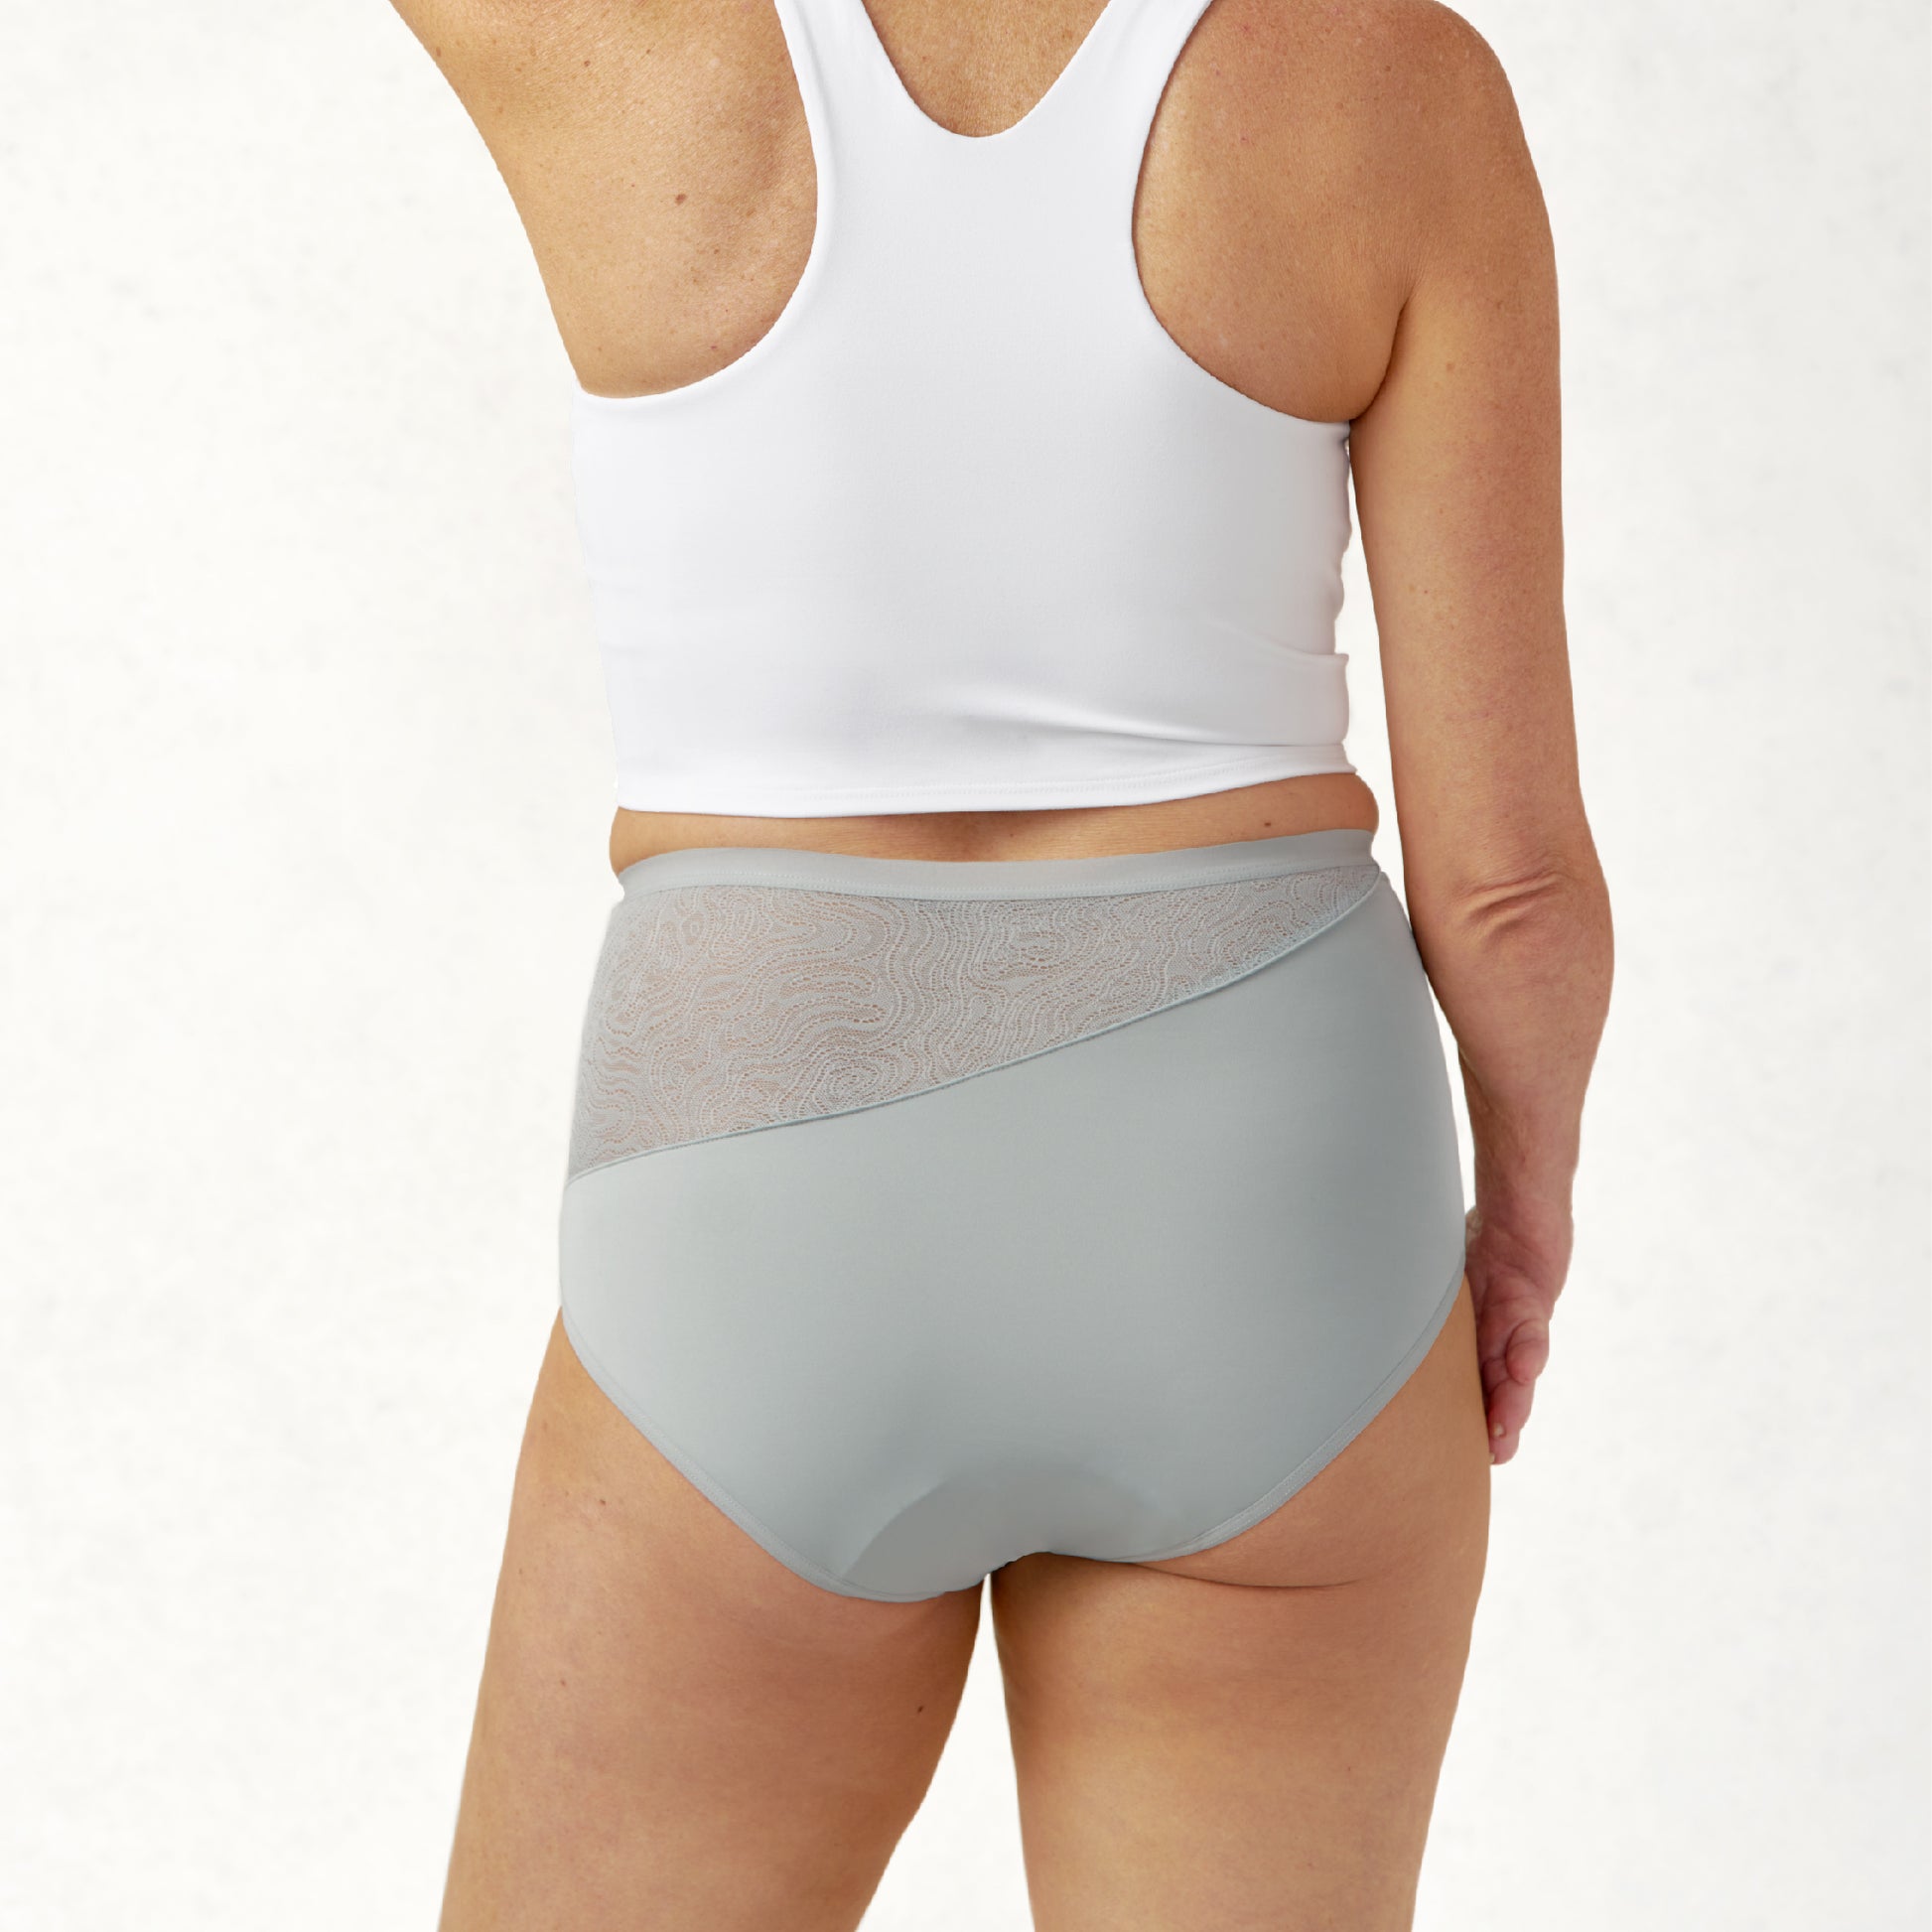 Tawop Pee Proof Underwear for Women Women'S Fashion Sexy Lace